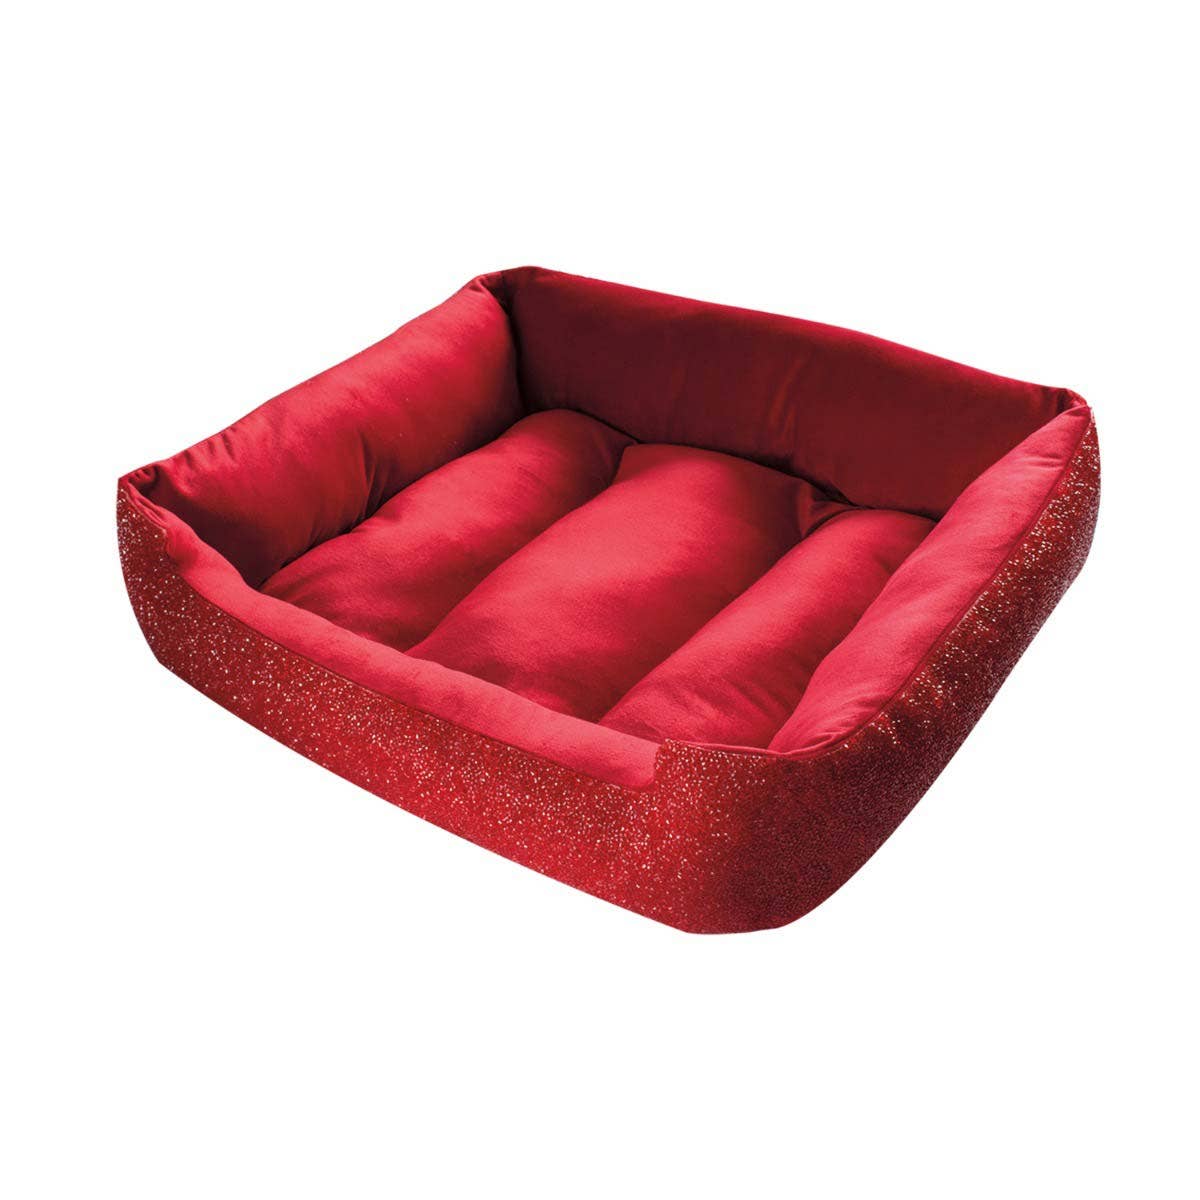 Rhinestone Dog Bed: Large / Charcoal